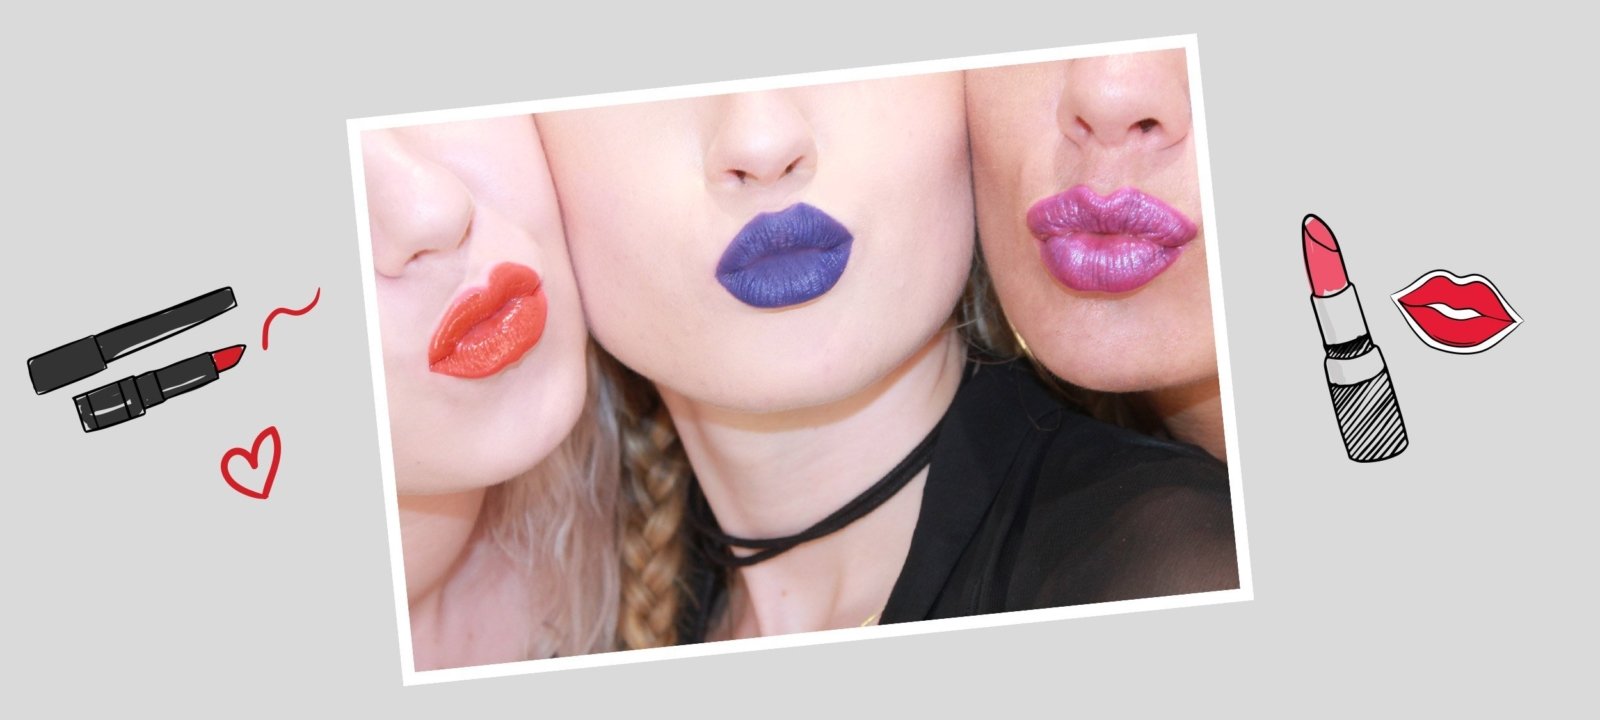 Internationaler Des Kusses Lippenstift Trends Fur Die Perfekten Lippen Styles Stories Der Lifestyle Living Blog Von Heine